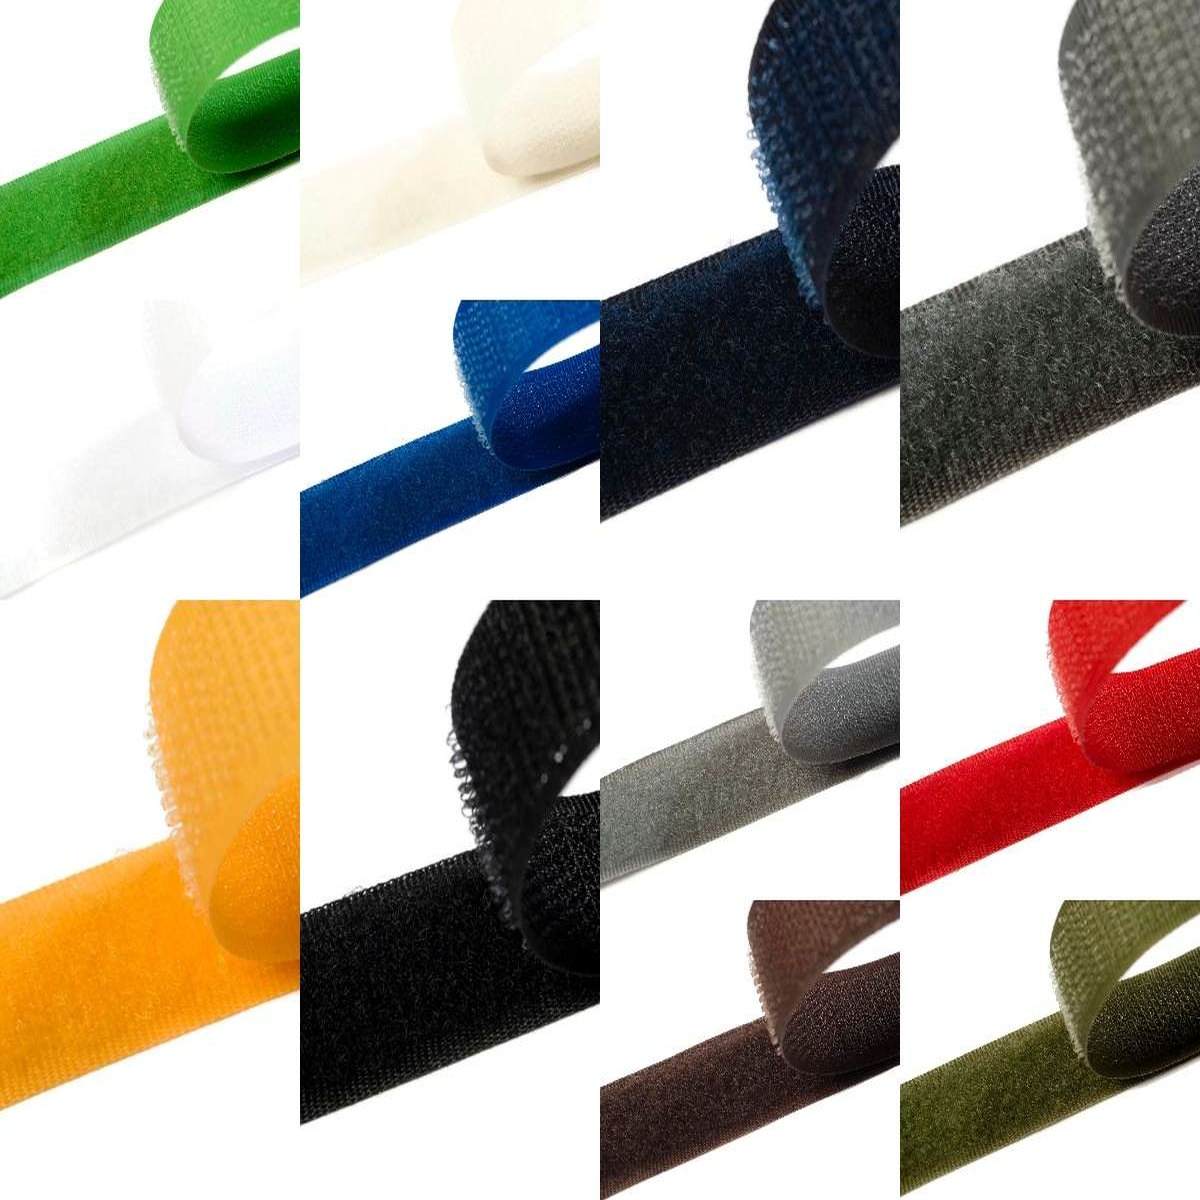 Klettband zum aufnähen 25mm breit in 12 Farben